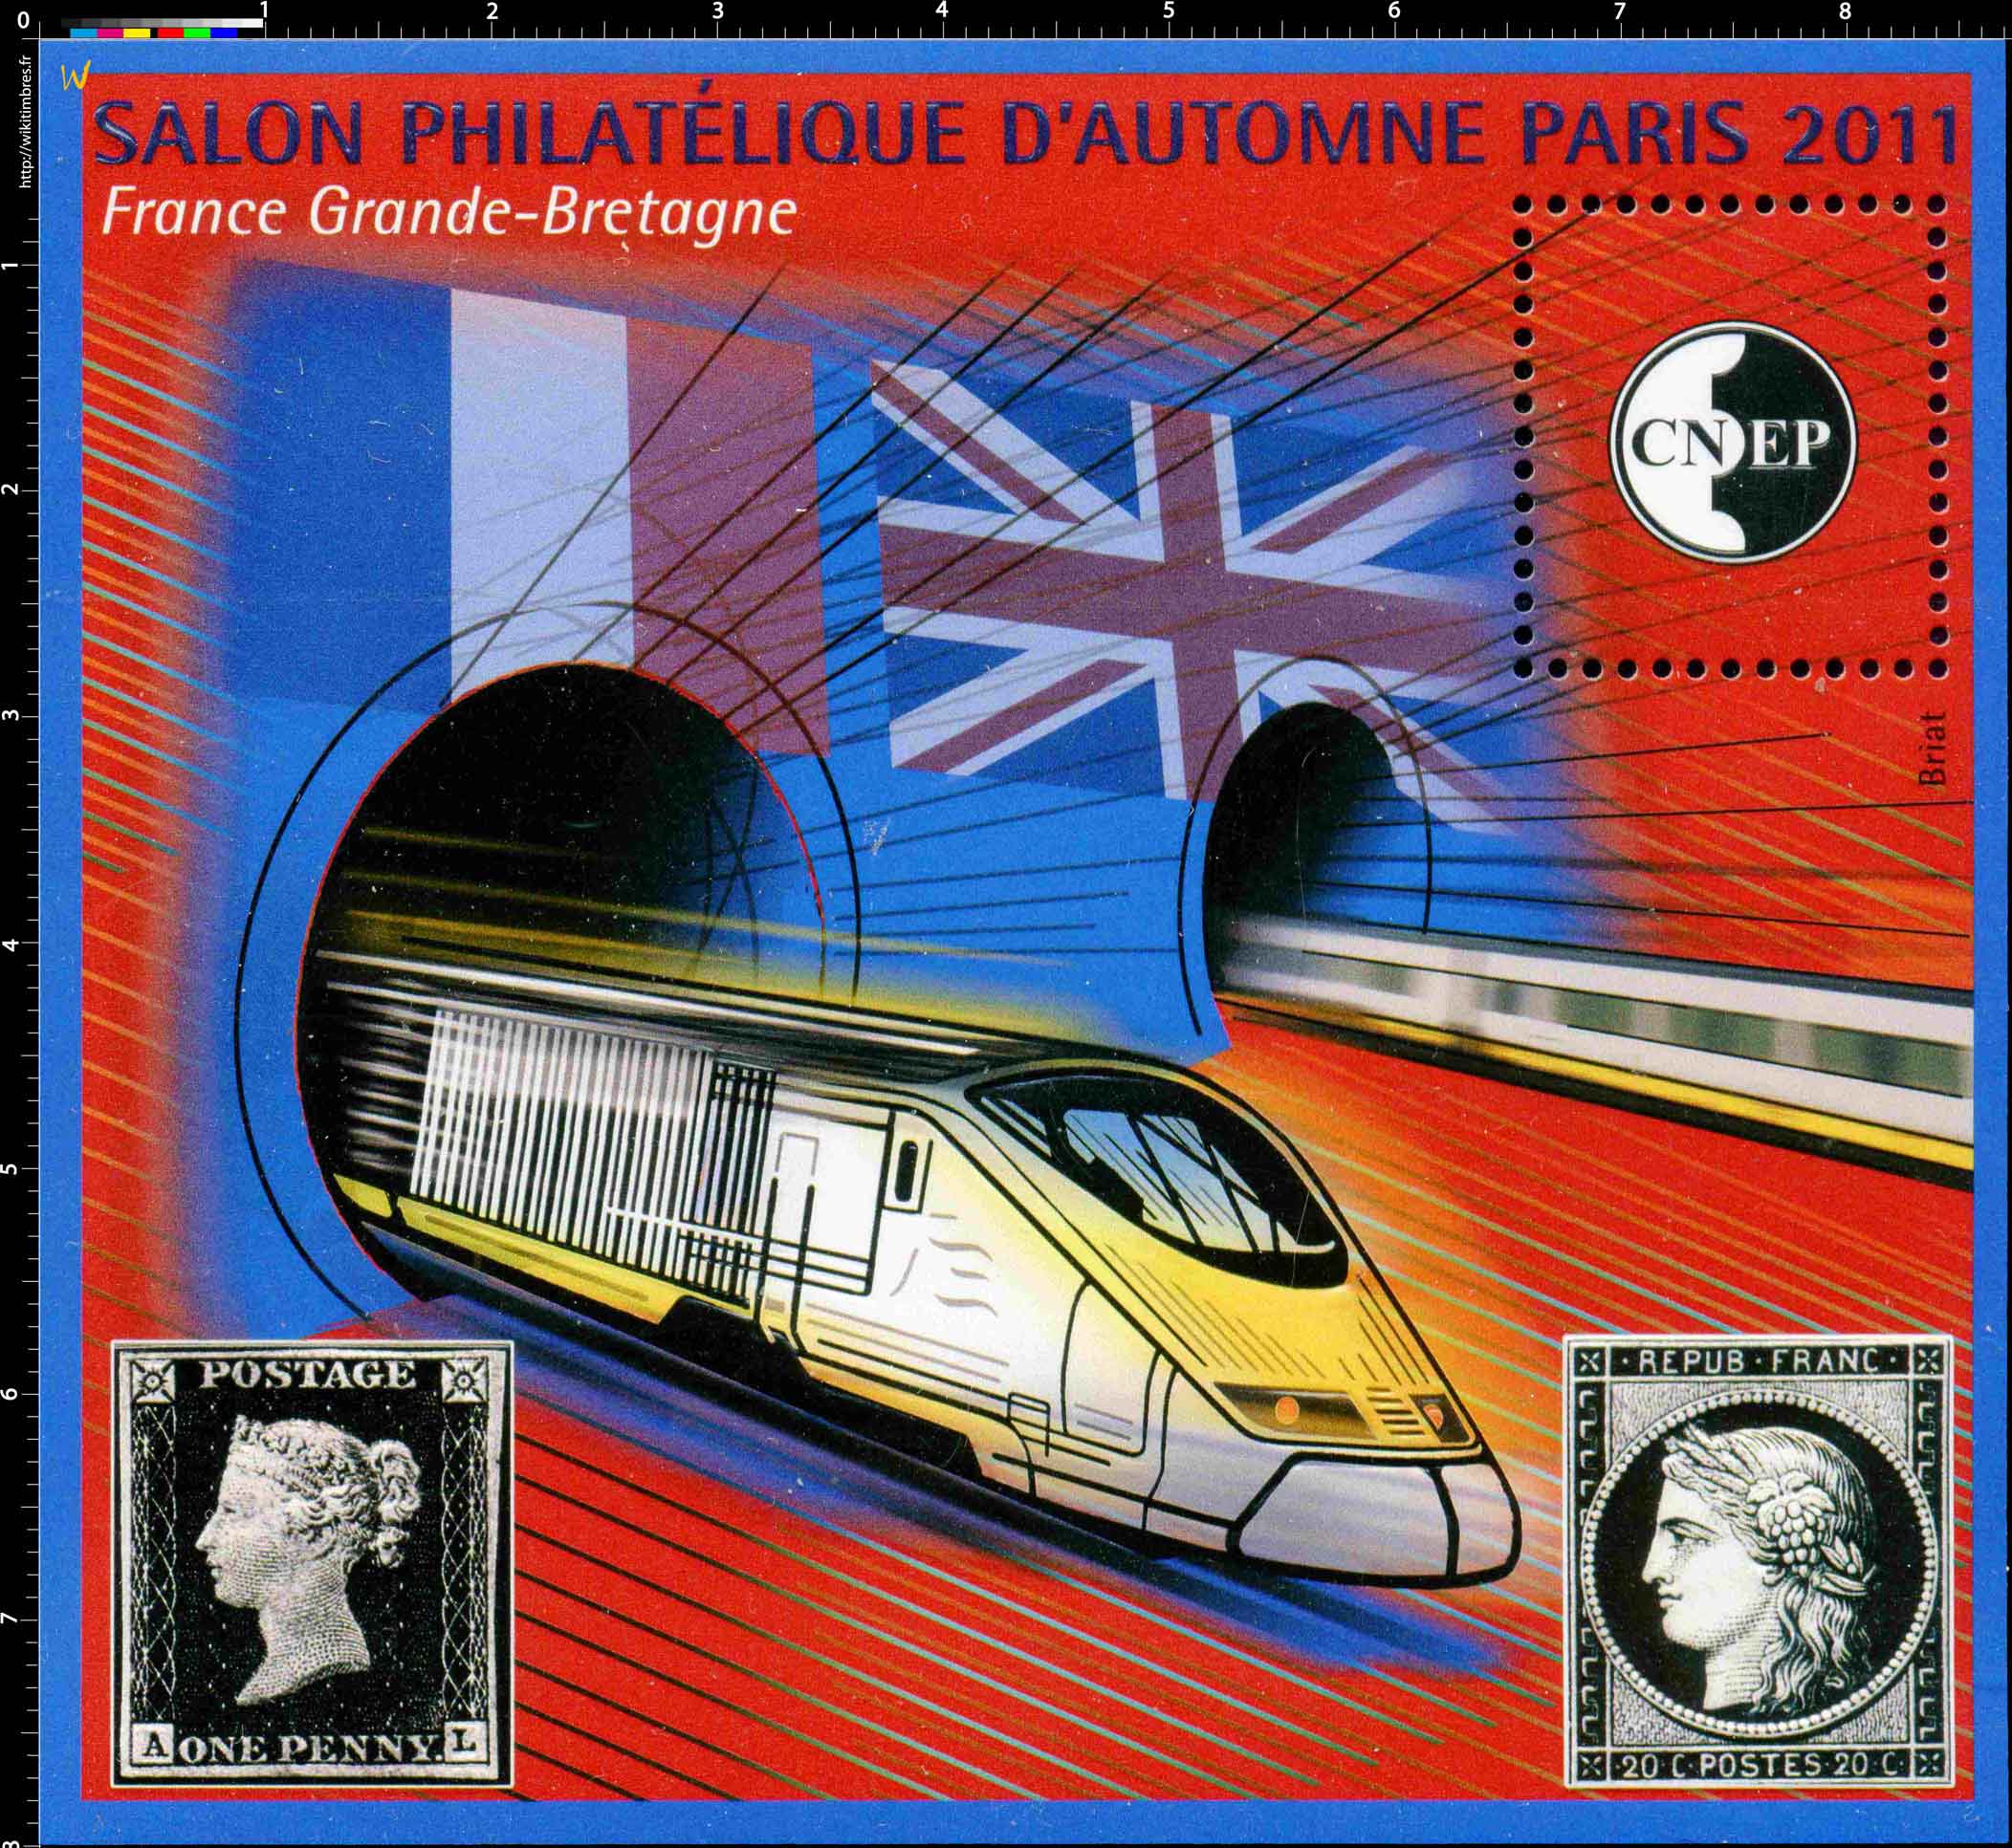 2011 Salon philatélique d'automne Paris CNEP France Grande-Bretagne